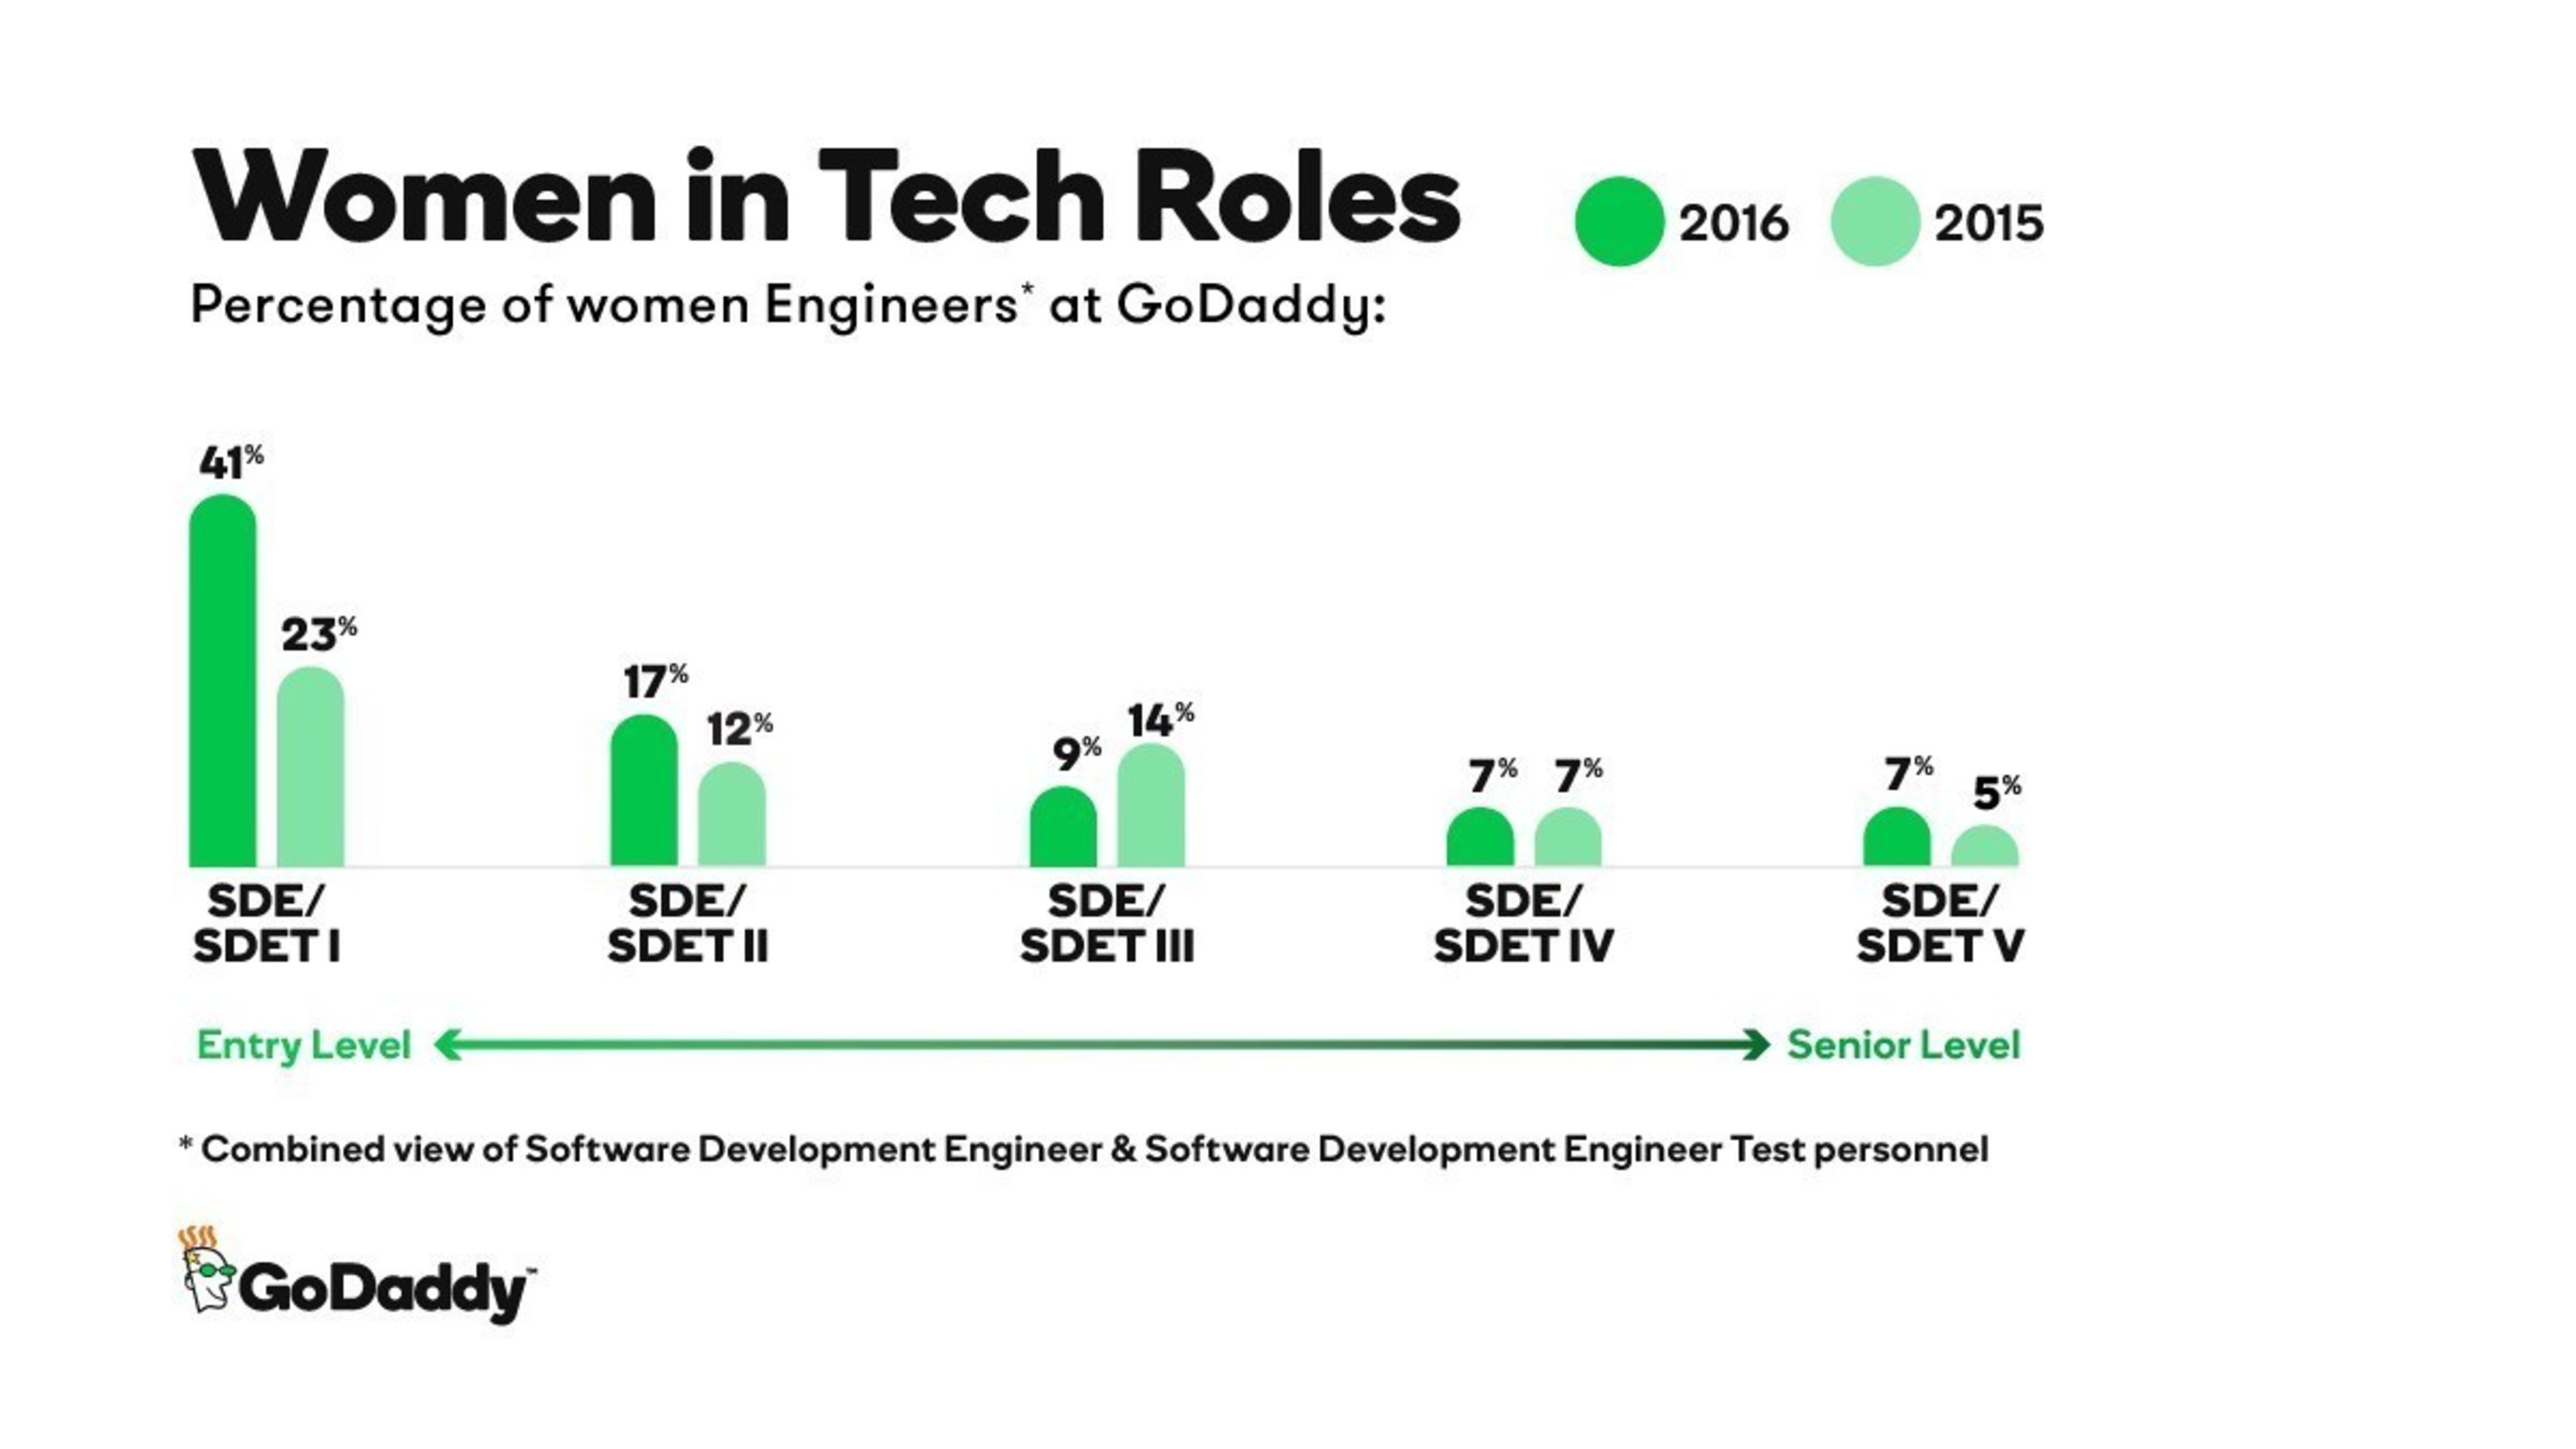 GoDaddy 2016 Women in Tech Roles Data